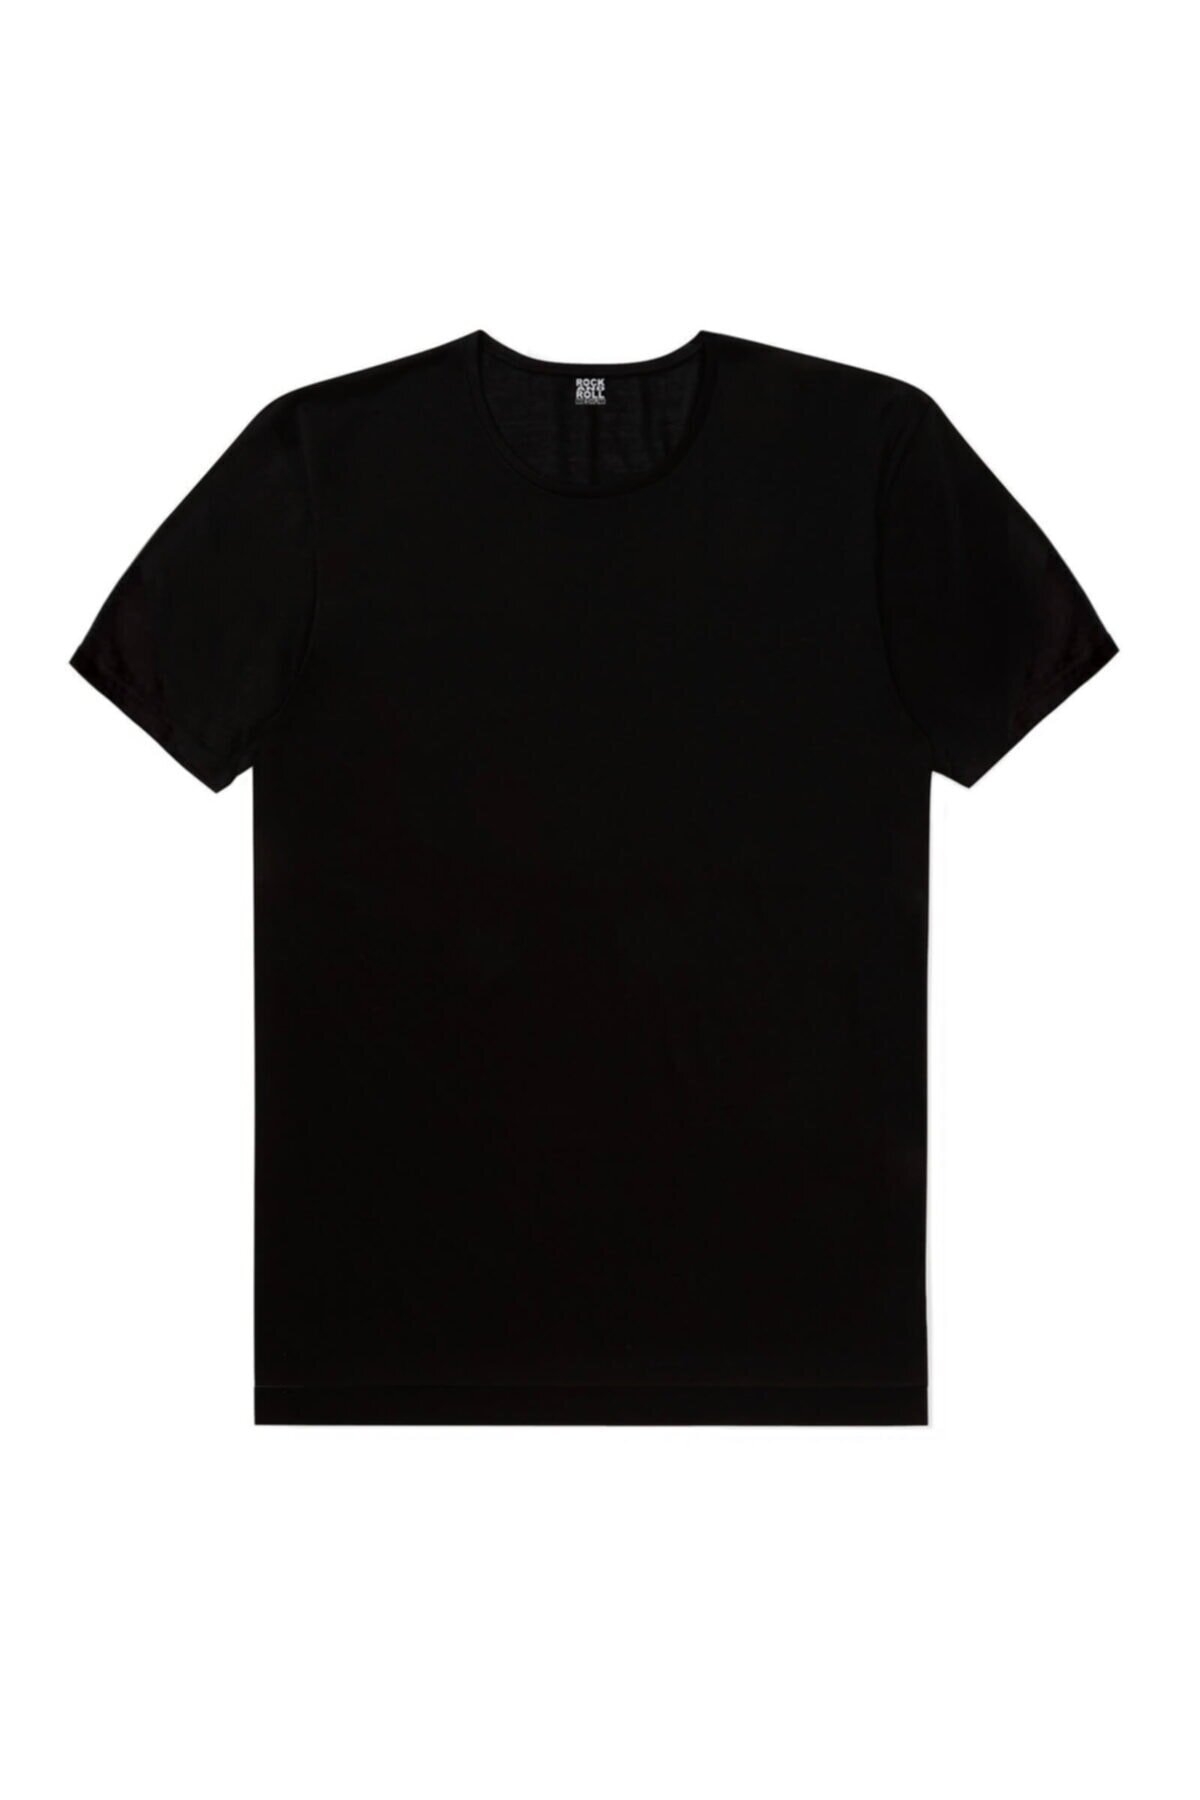 Düz, Baskısız Siyah Kadın 3'lü Eko Paket T-shirt